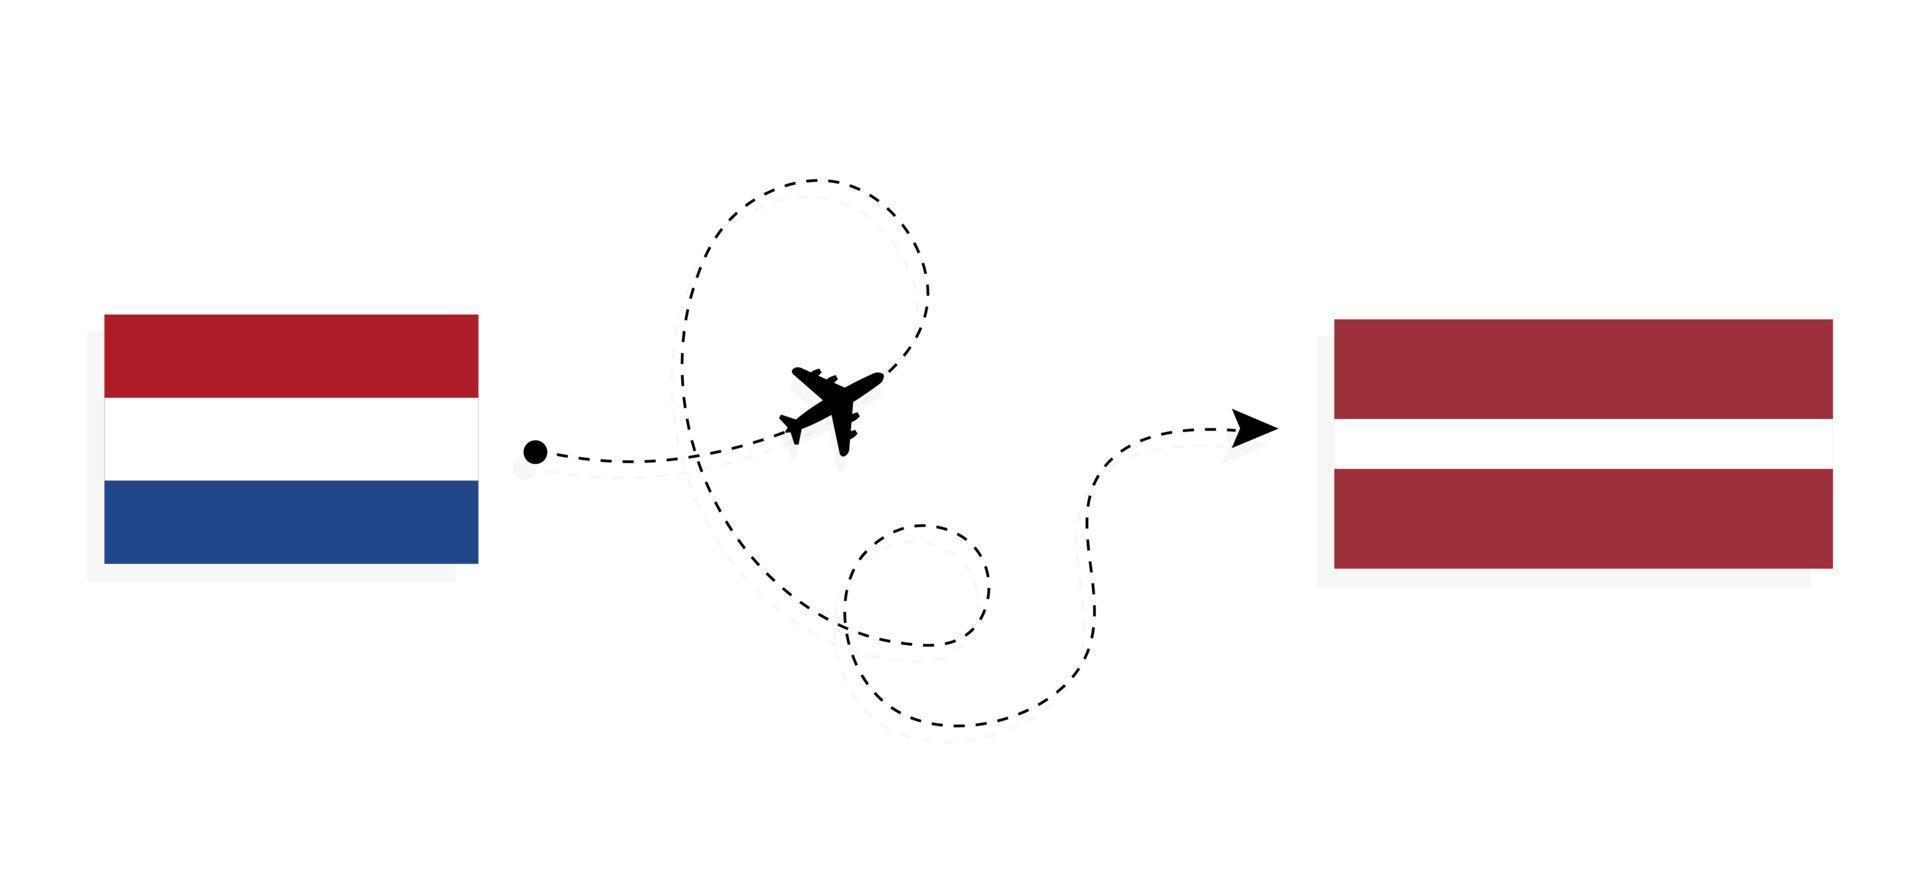 Flug und Reise von den Niederlanden nach Lettland mit dem Reisekonzept für Passagierflugzeuge vektor